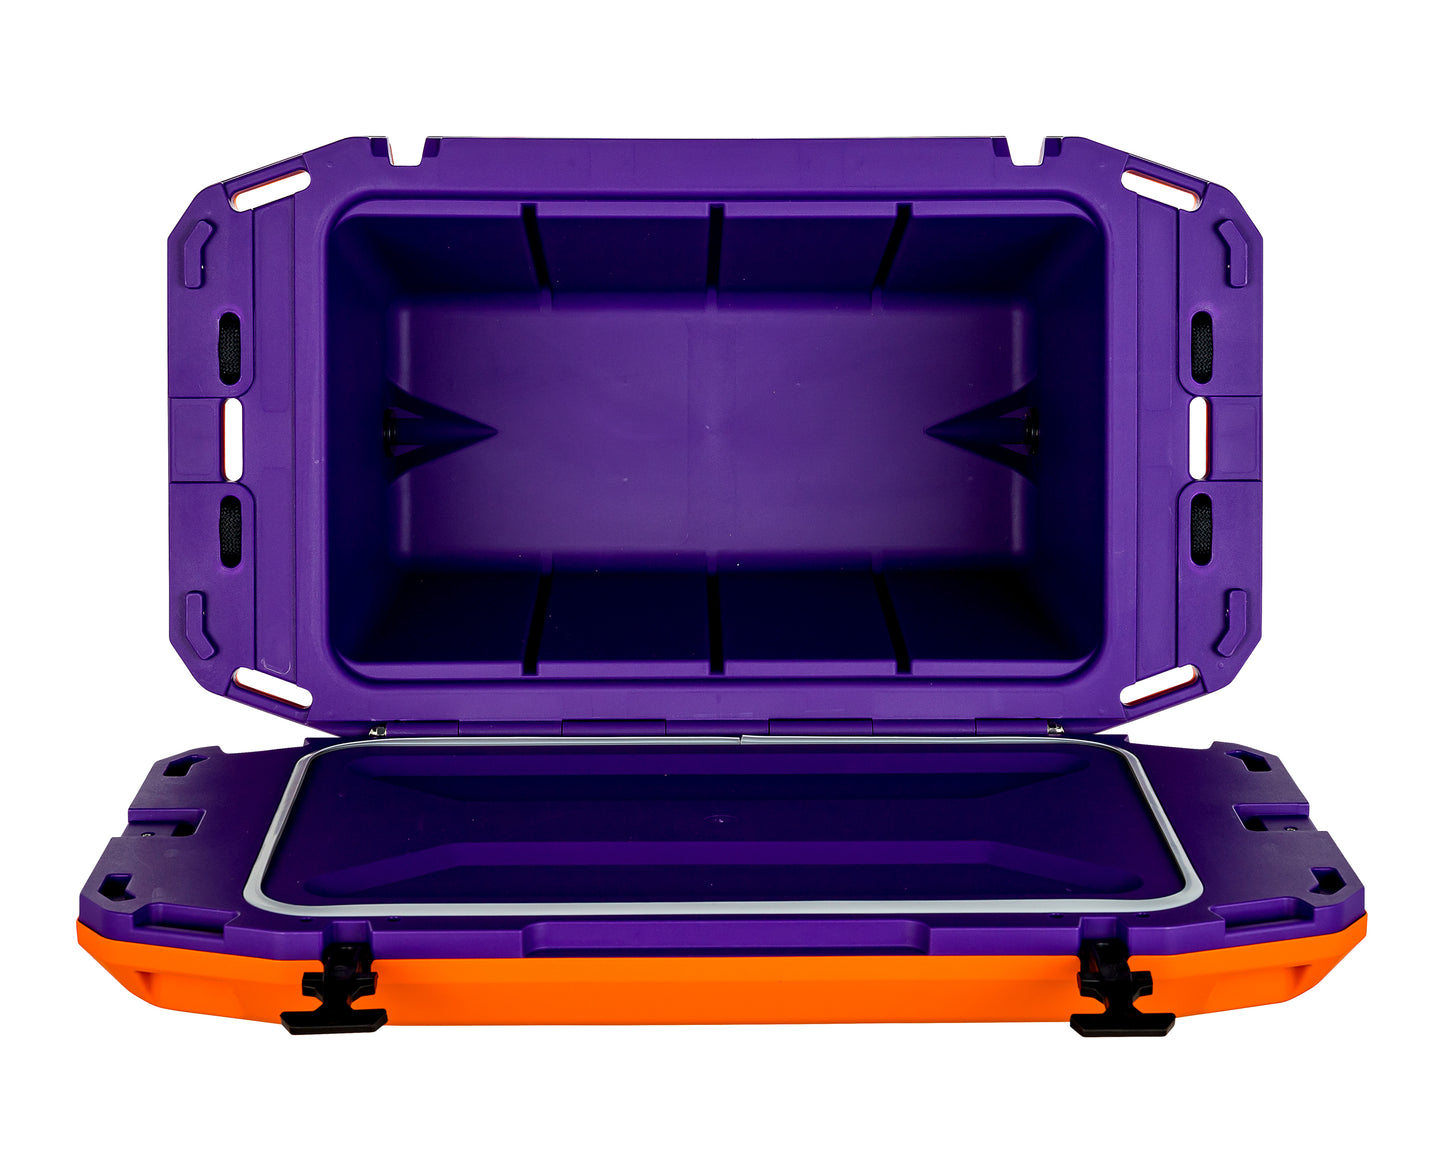 Currituck 50 Quart Premium Cooler - Orange & Purple